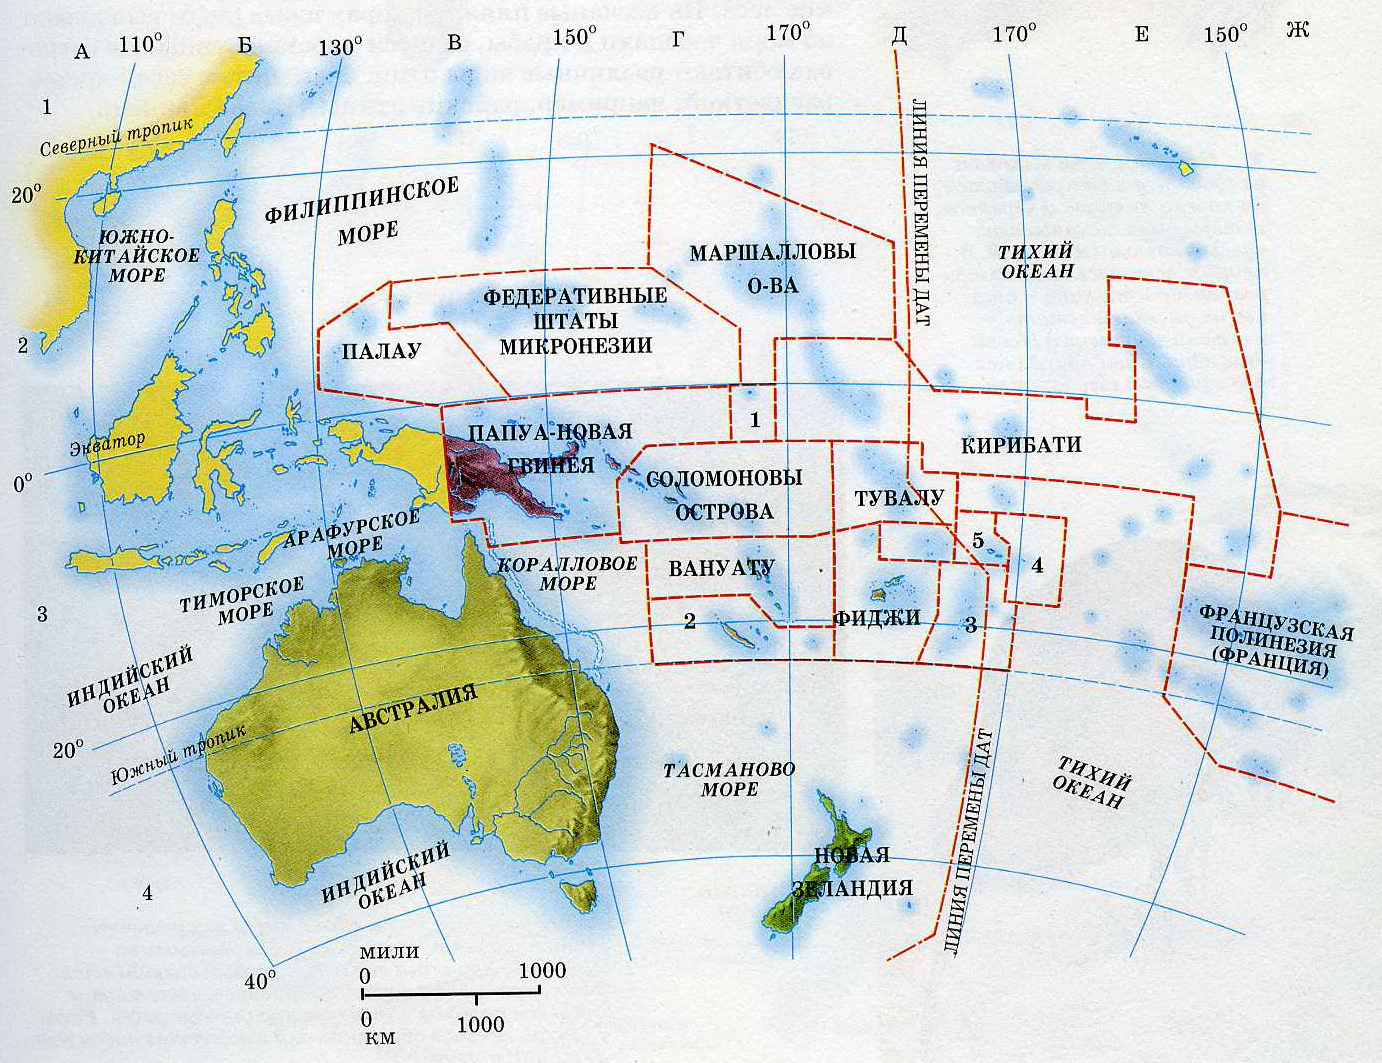 Острова тихого океана список на карте. Государства Австралии и Океании на карте. Политическая карта Океании. Границы трех регионов Океании в Австралии на карте. Границы трех регионов Океании в Австралии на контурной карте.